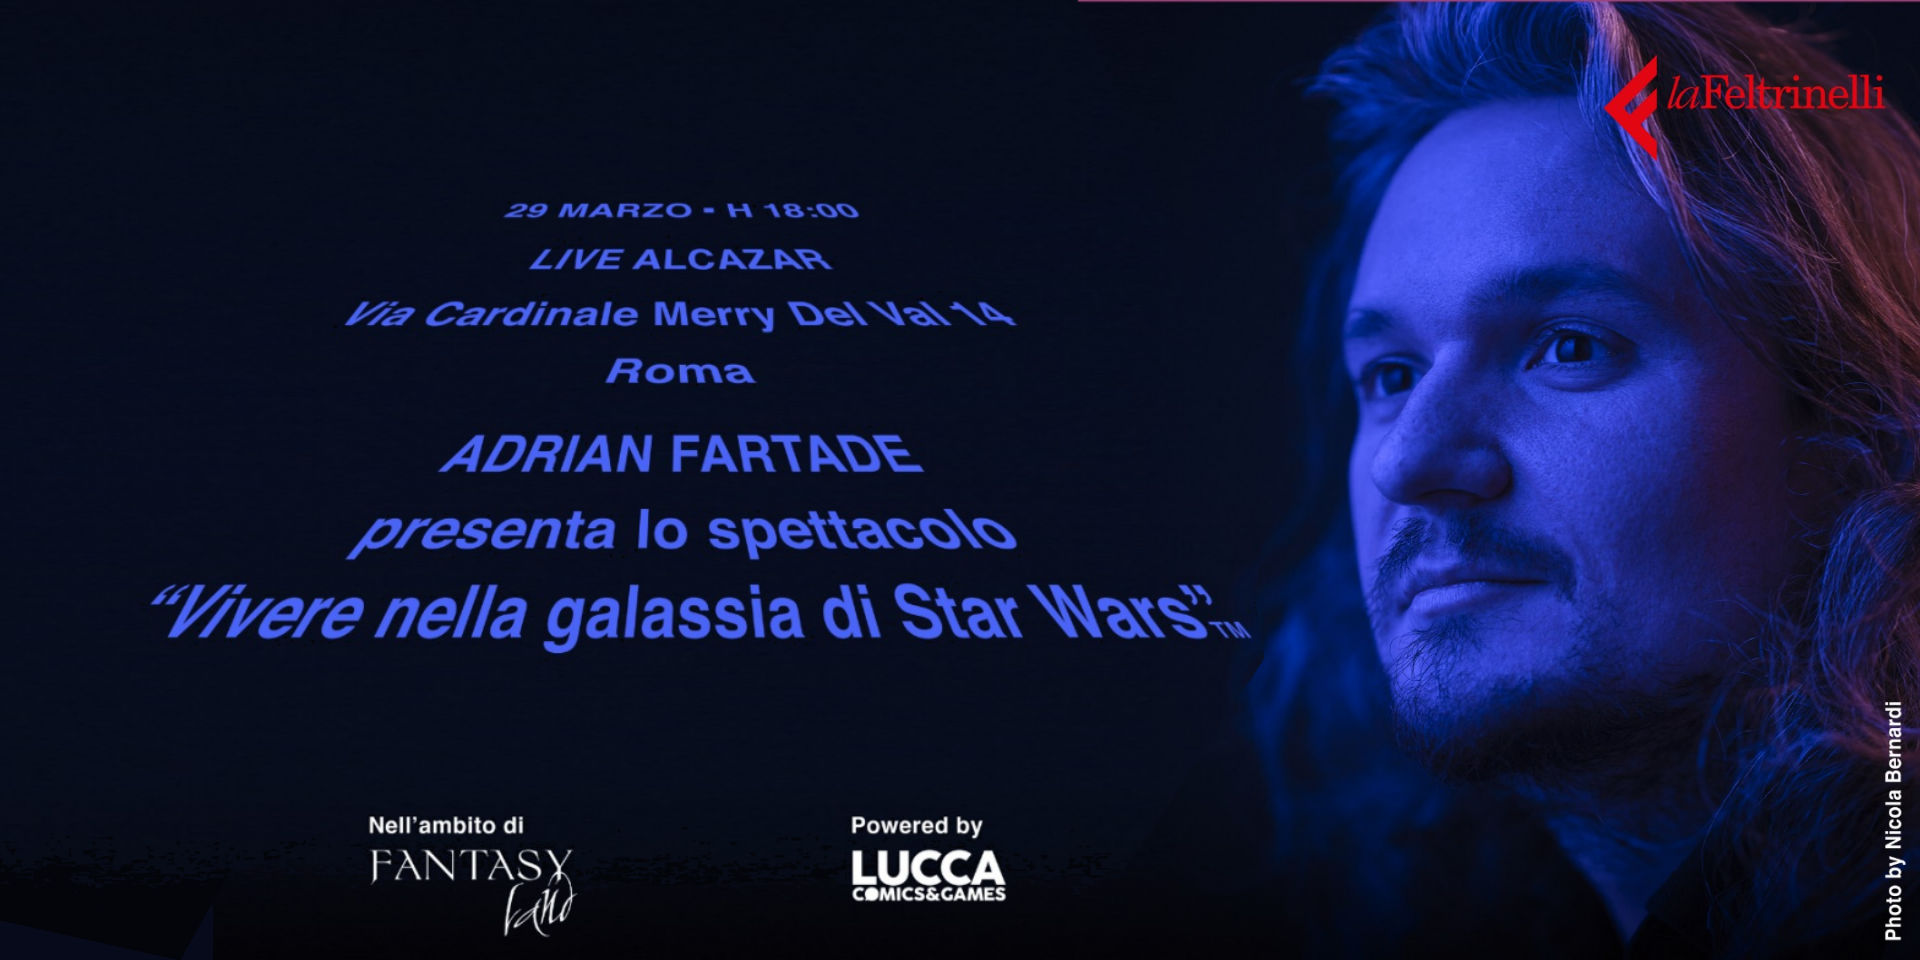 Vivere nella galassia di Star Wars con Adrian Fartade a Roma